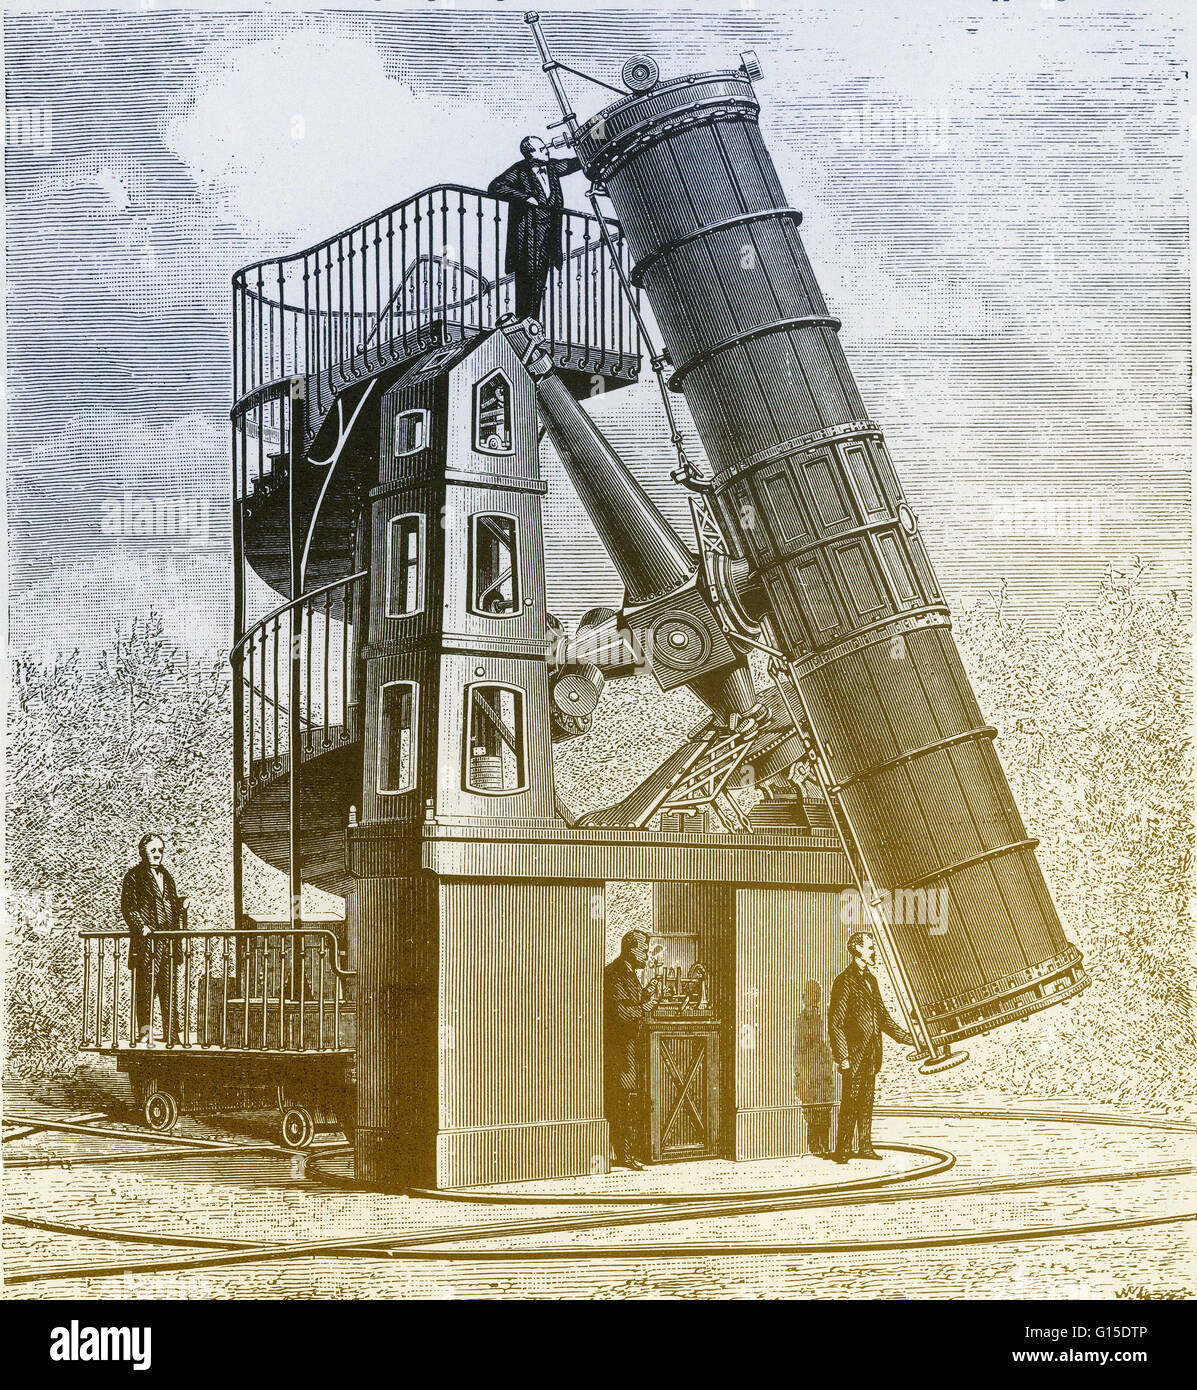 Télescope de Paris. Télescope de Newton, installé à l'Observatoire de  Paris, France, pendant les années 1860. Il avait un 1.2 mètre (48 pouces)  de diamètre miroir. C'était le premier grand télescope miroir